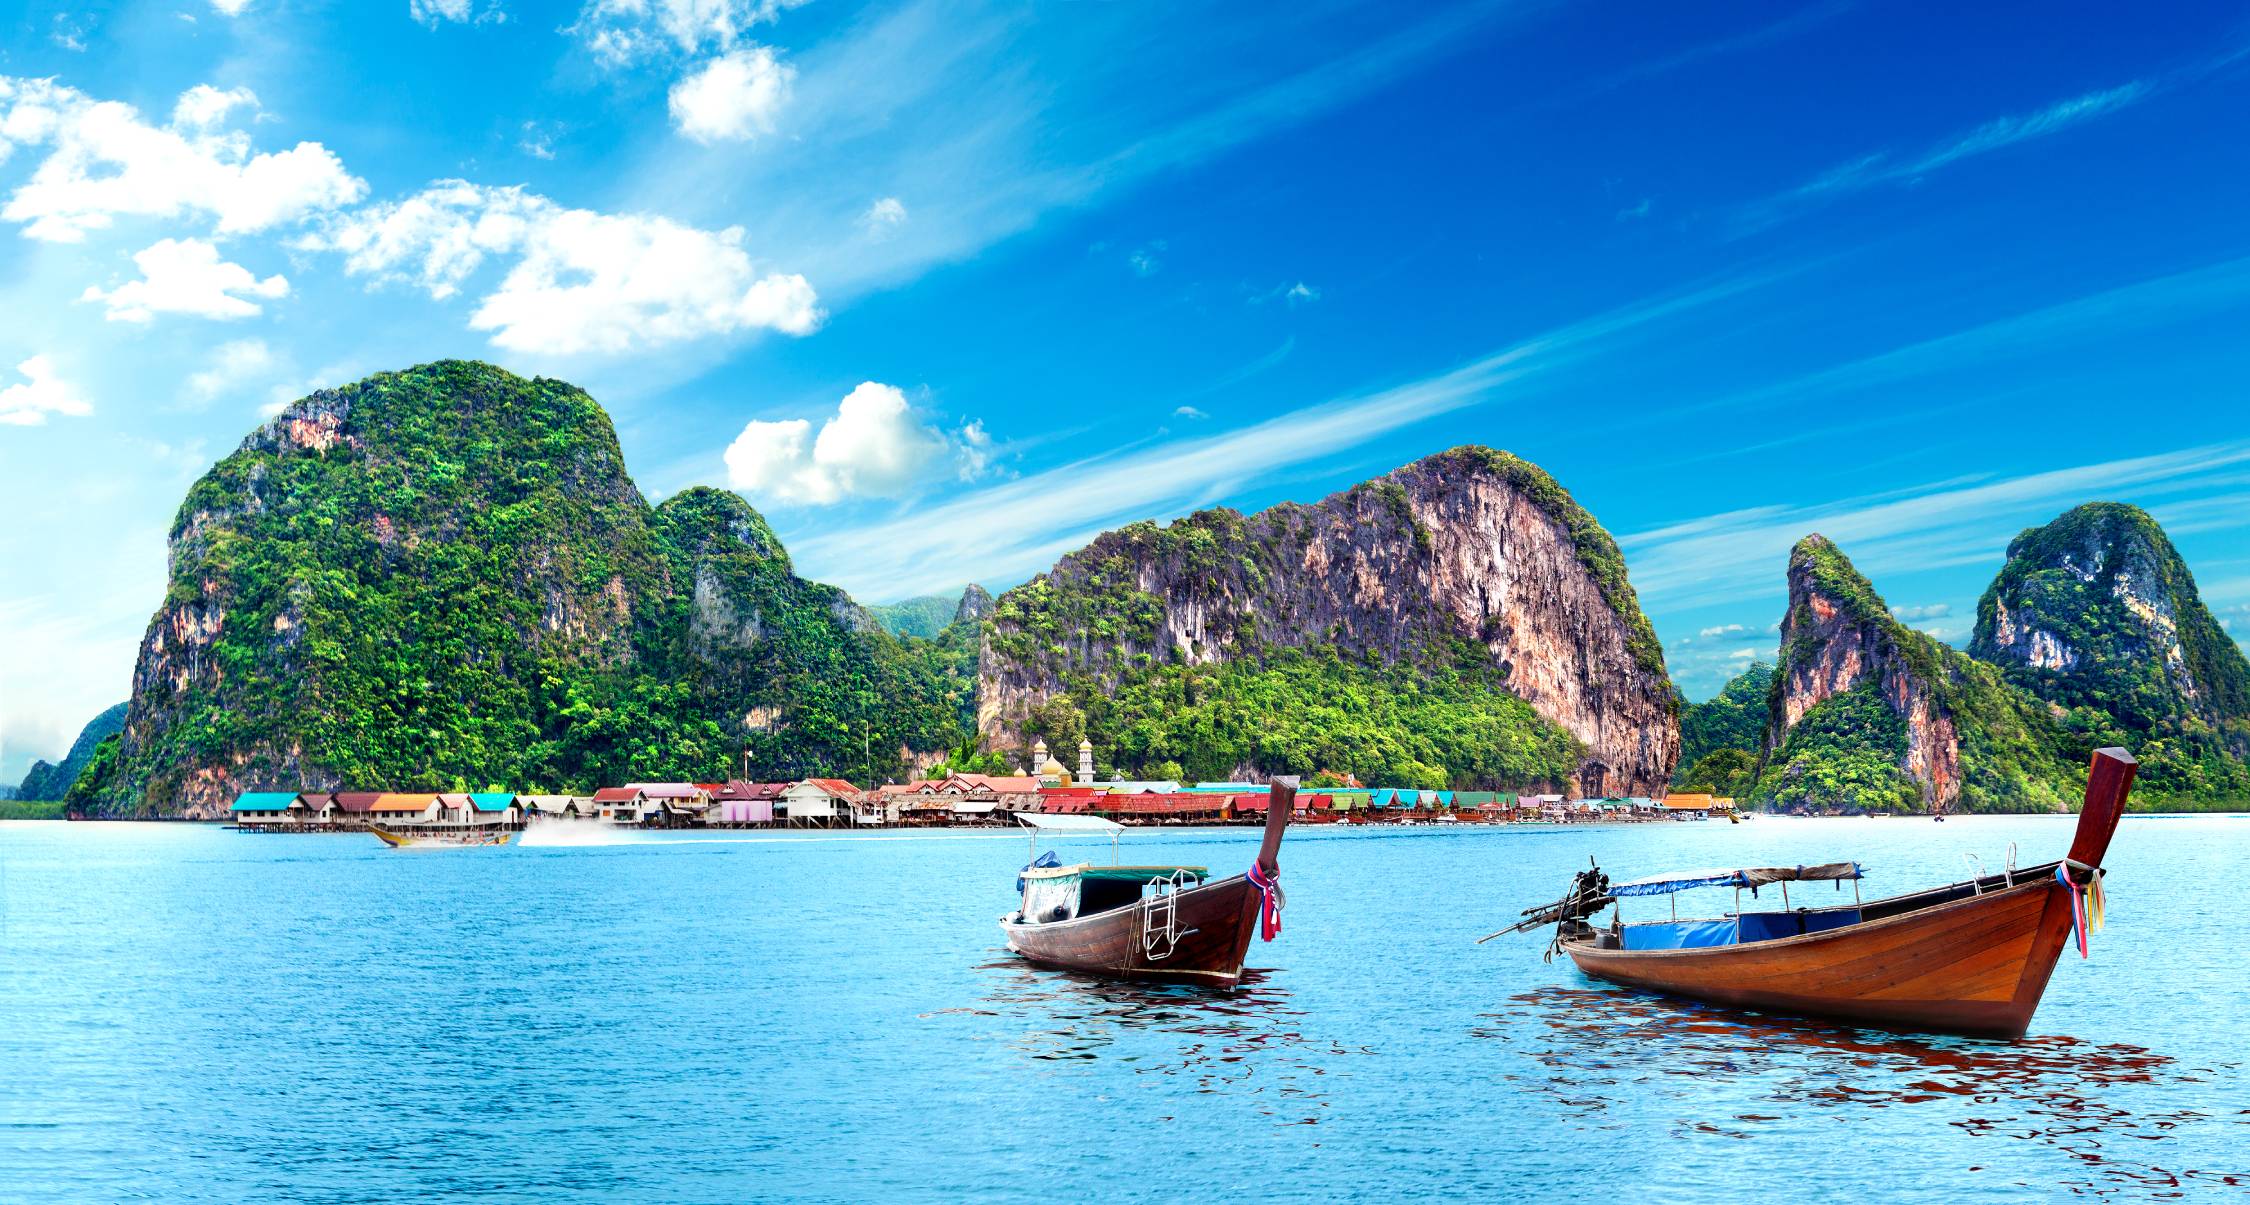 Θέα στη θάλασσα και το νησί της Ταϊλάνδης. Είδος περιπέτειας και εξωτικού ταξιδιού.